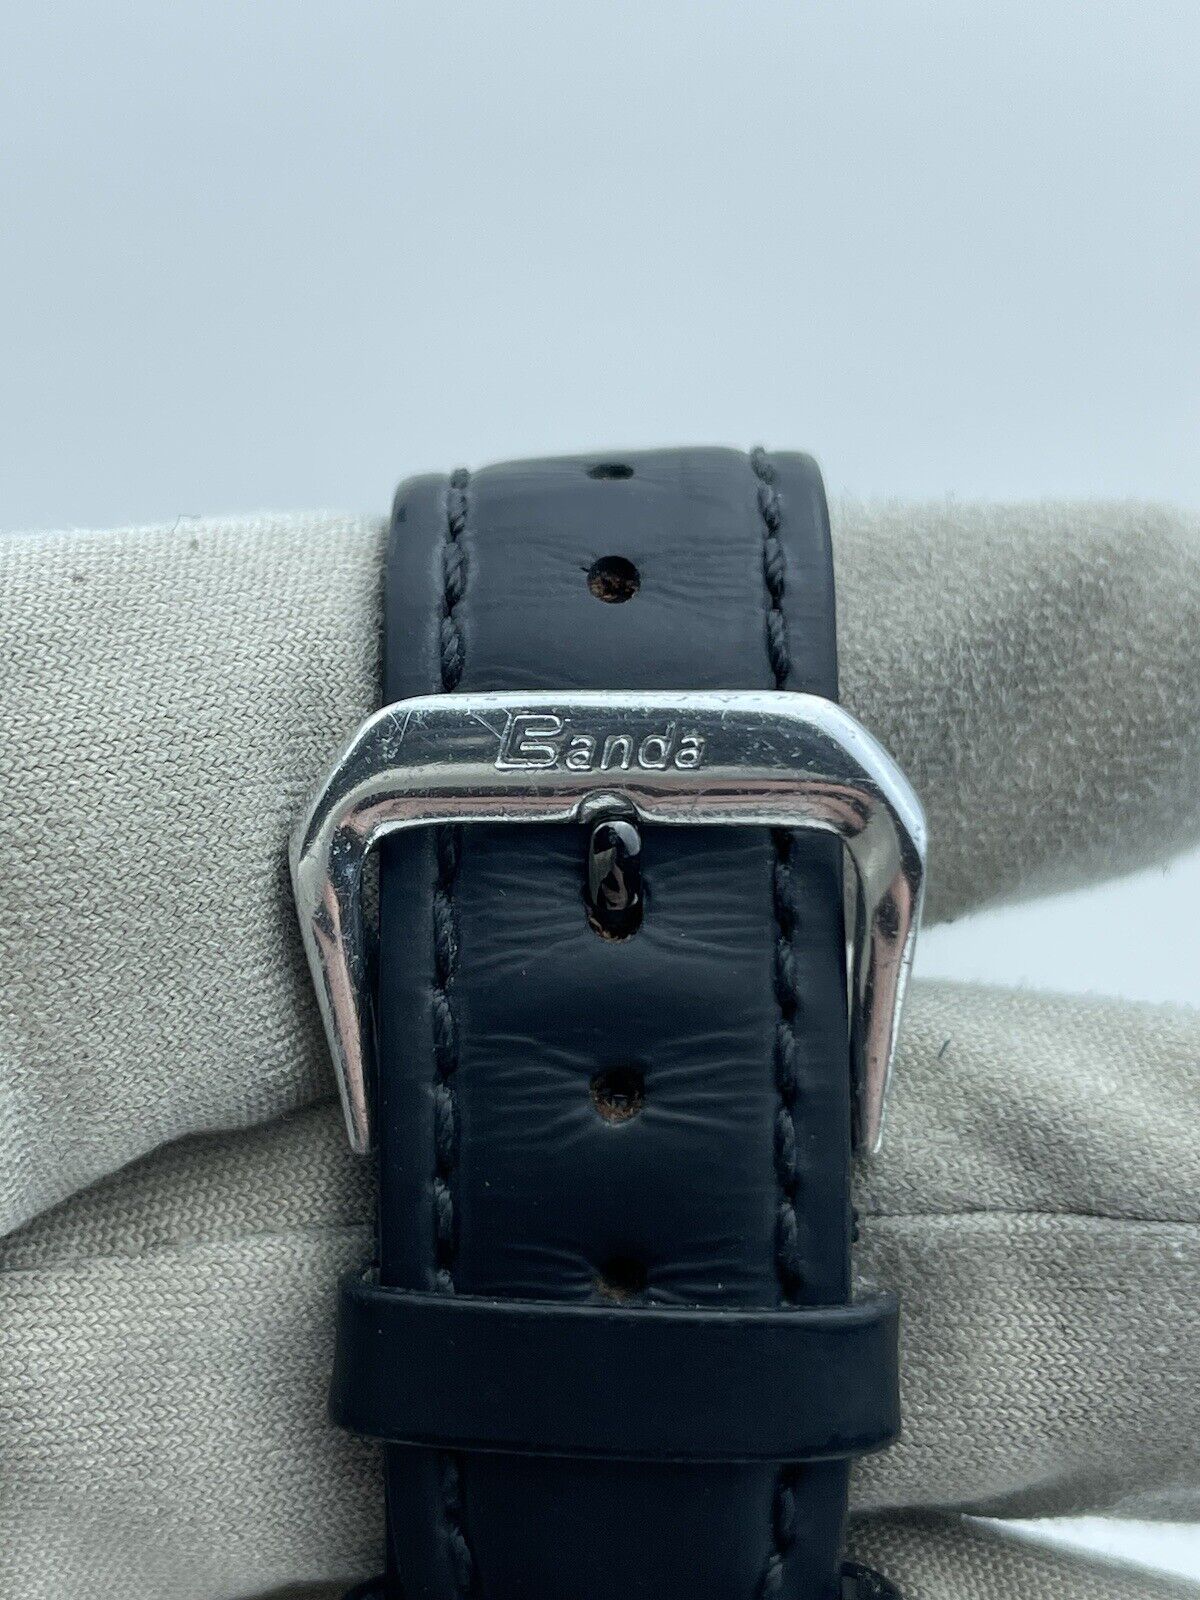 BVLGARI Via De Condotti Carbon Gold Automatic Black Leather Watch